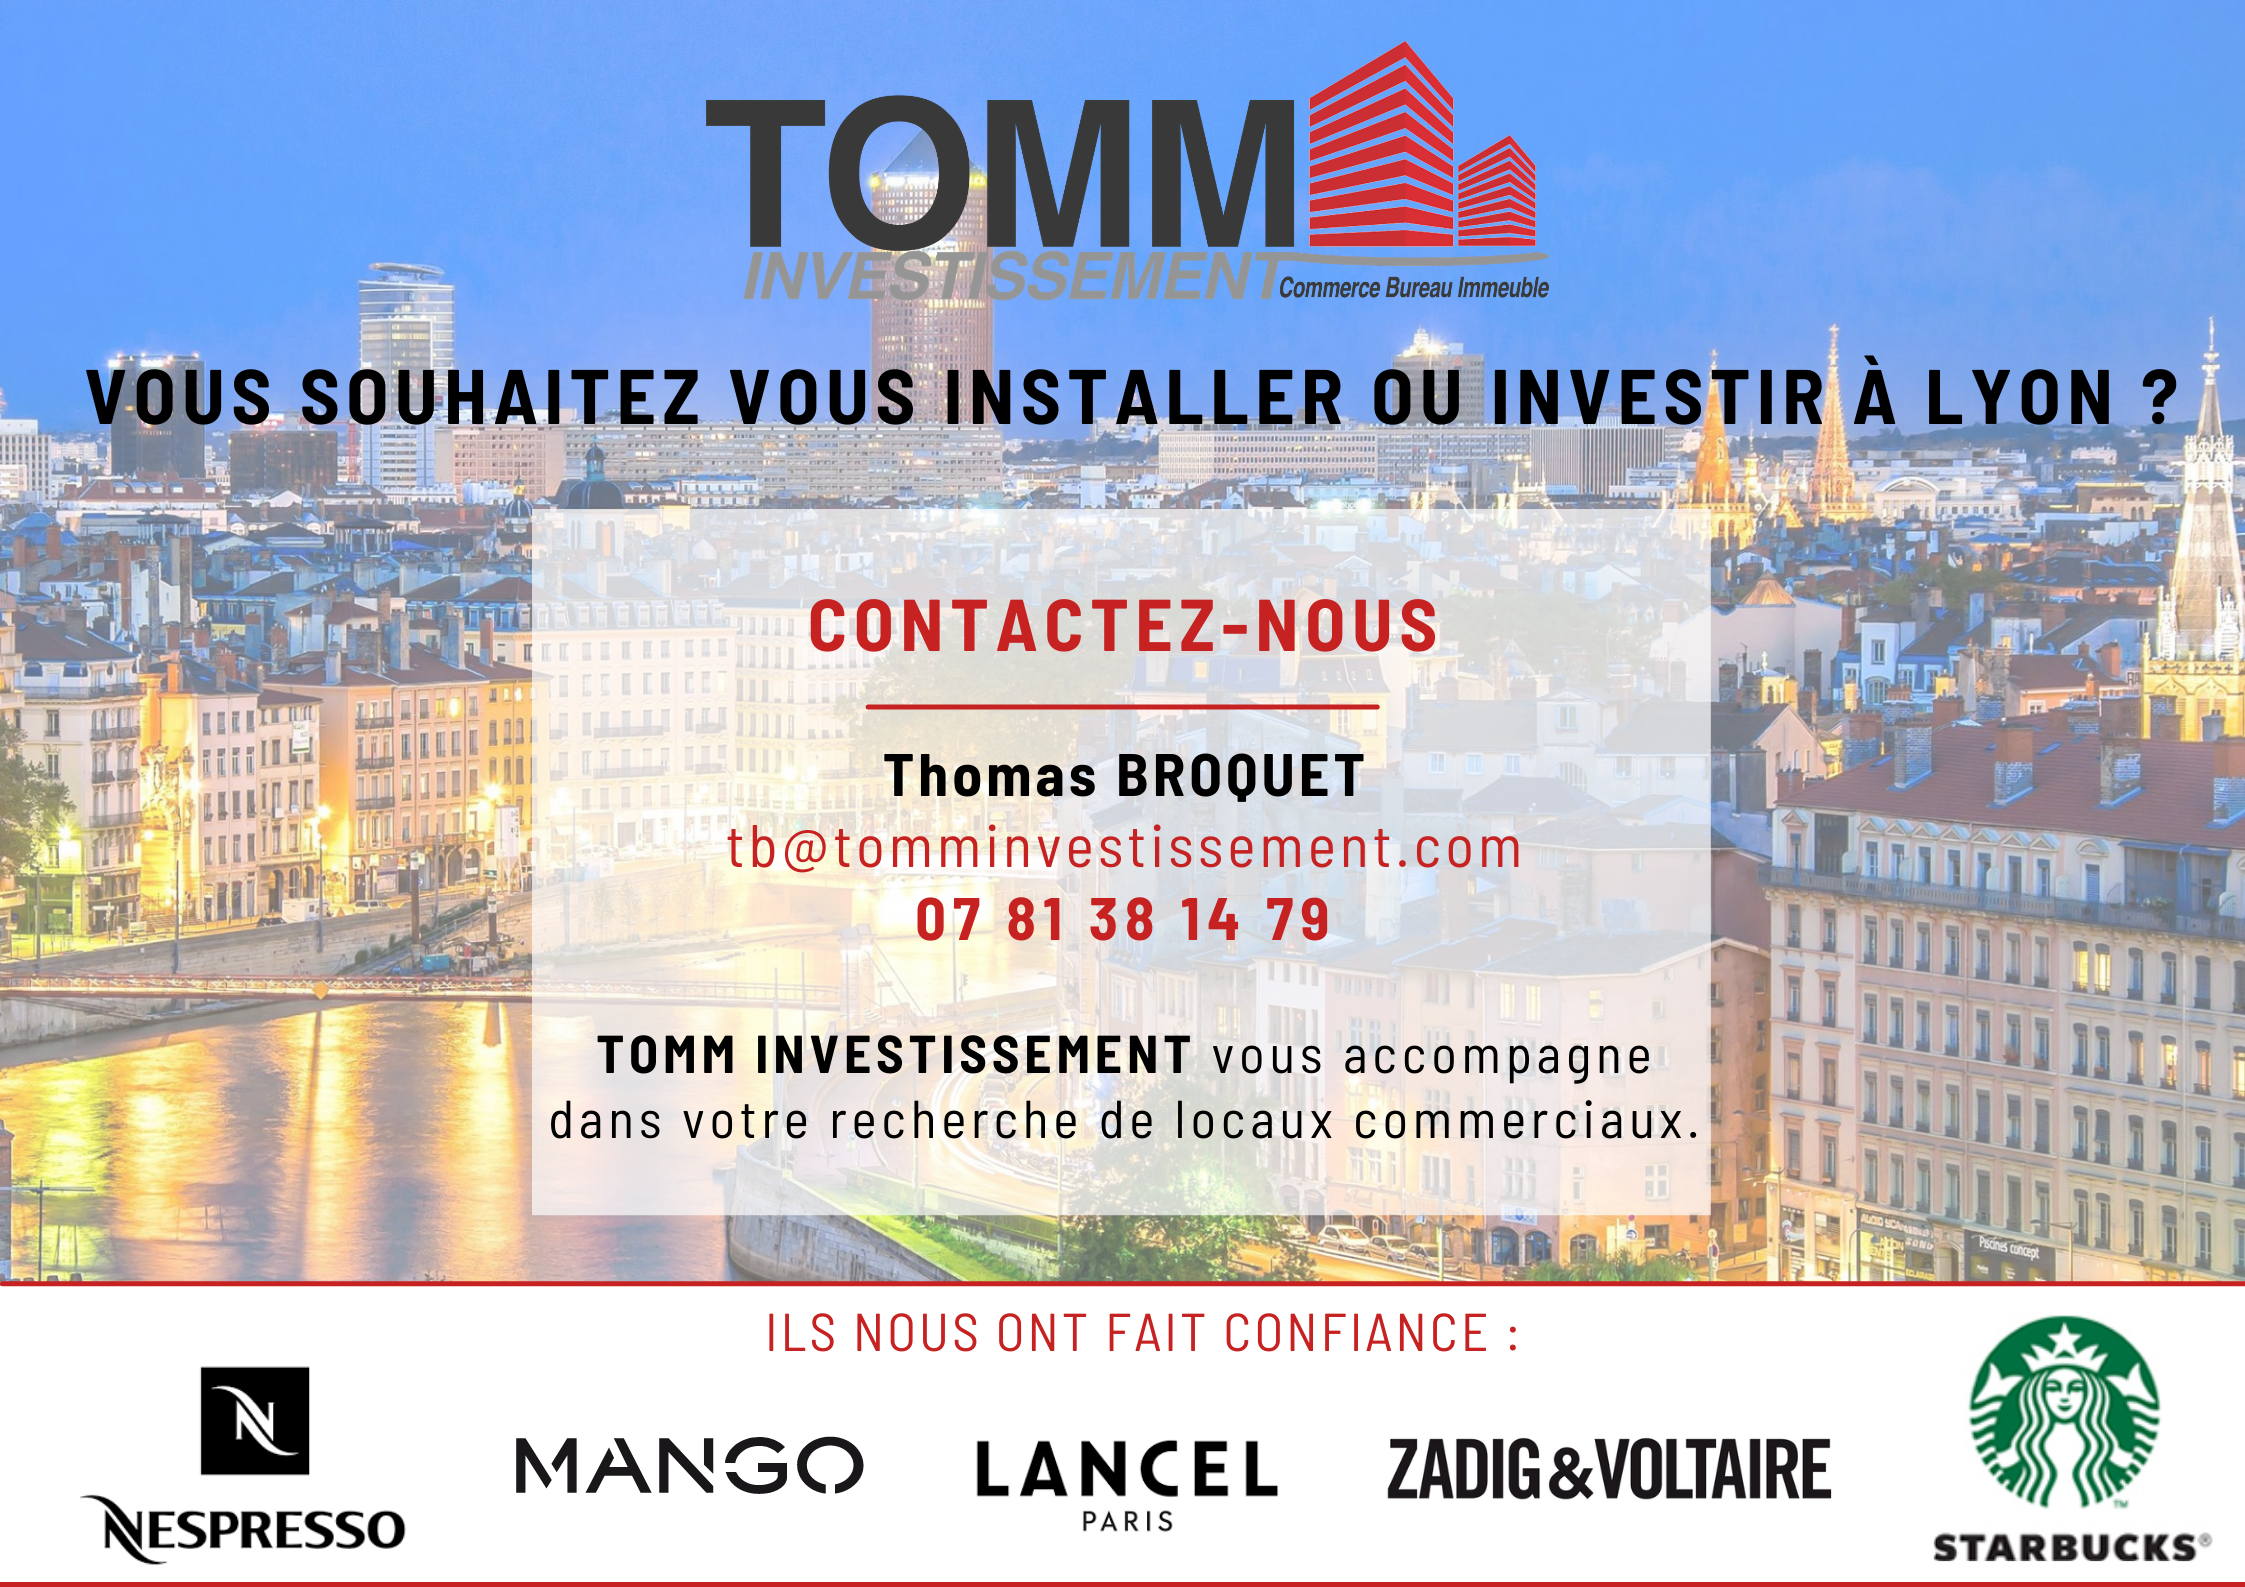 Thomas BROQUET – Votre recherche de locaux commerciaux à Lyon